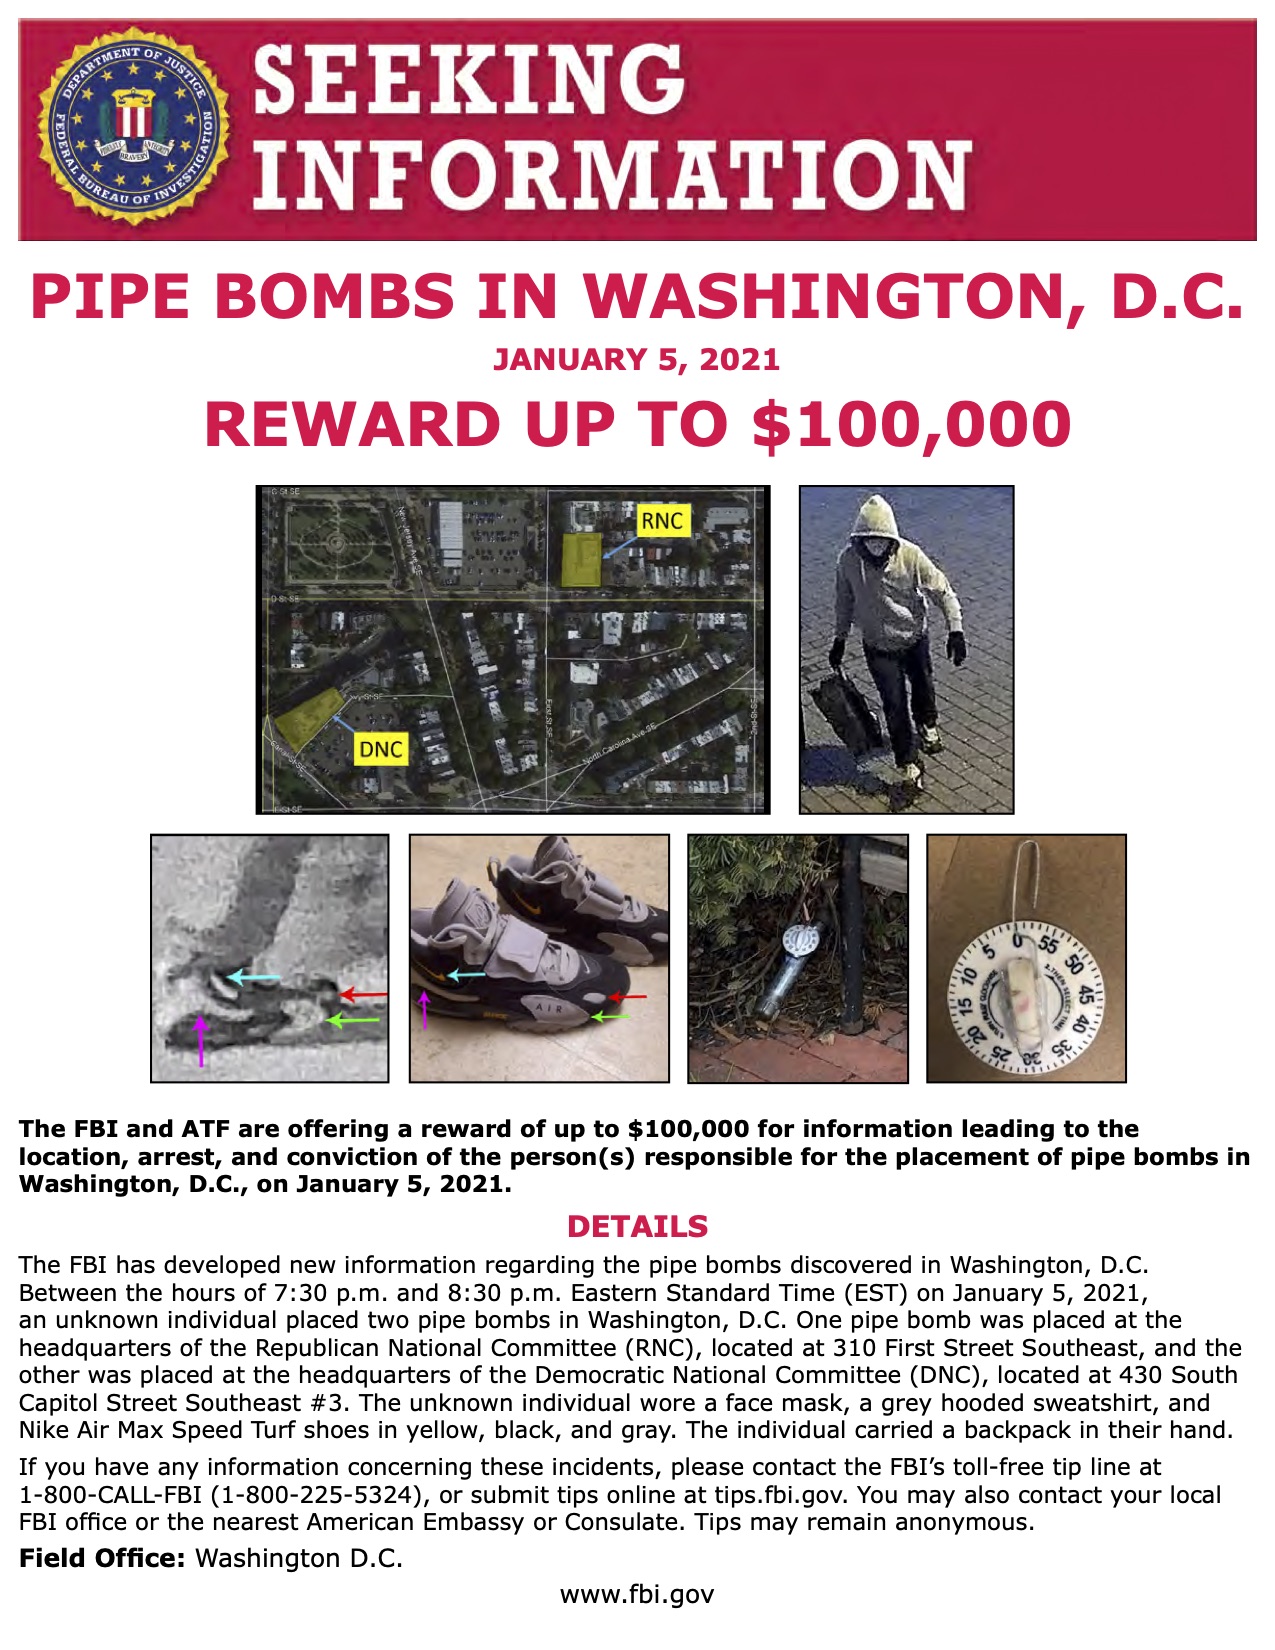 Бомбы у Капитолия. ФБР предлагает $100 000 за информацию о подозреваемых